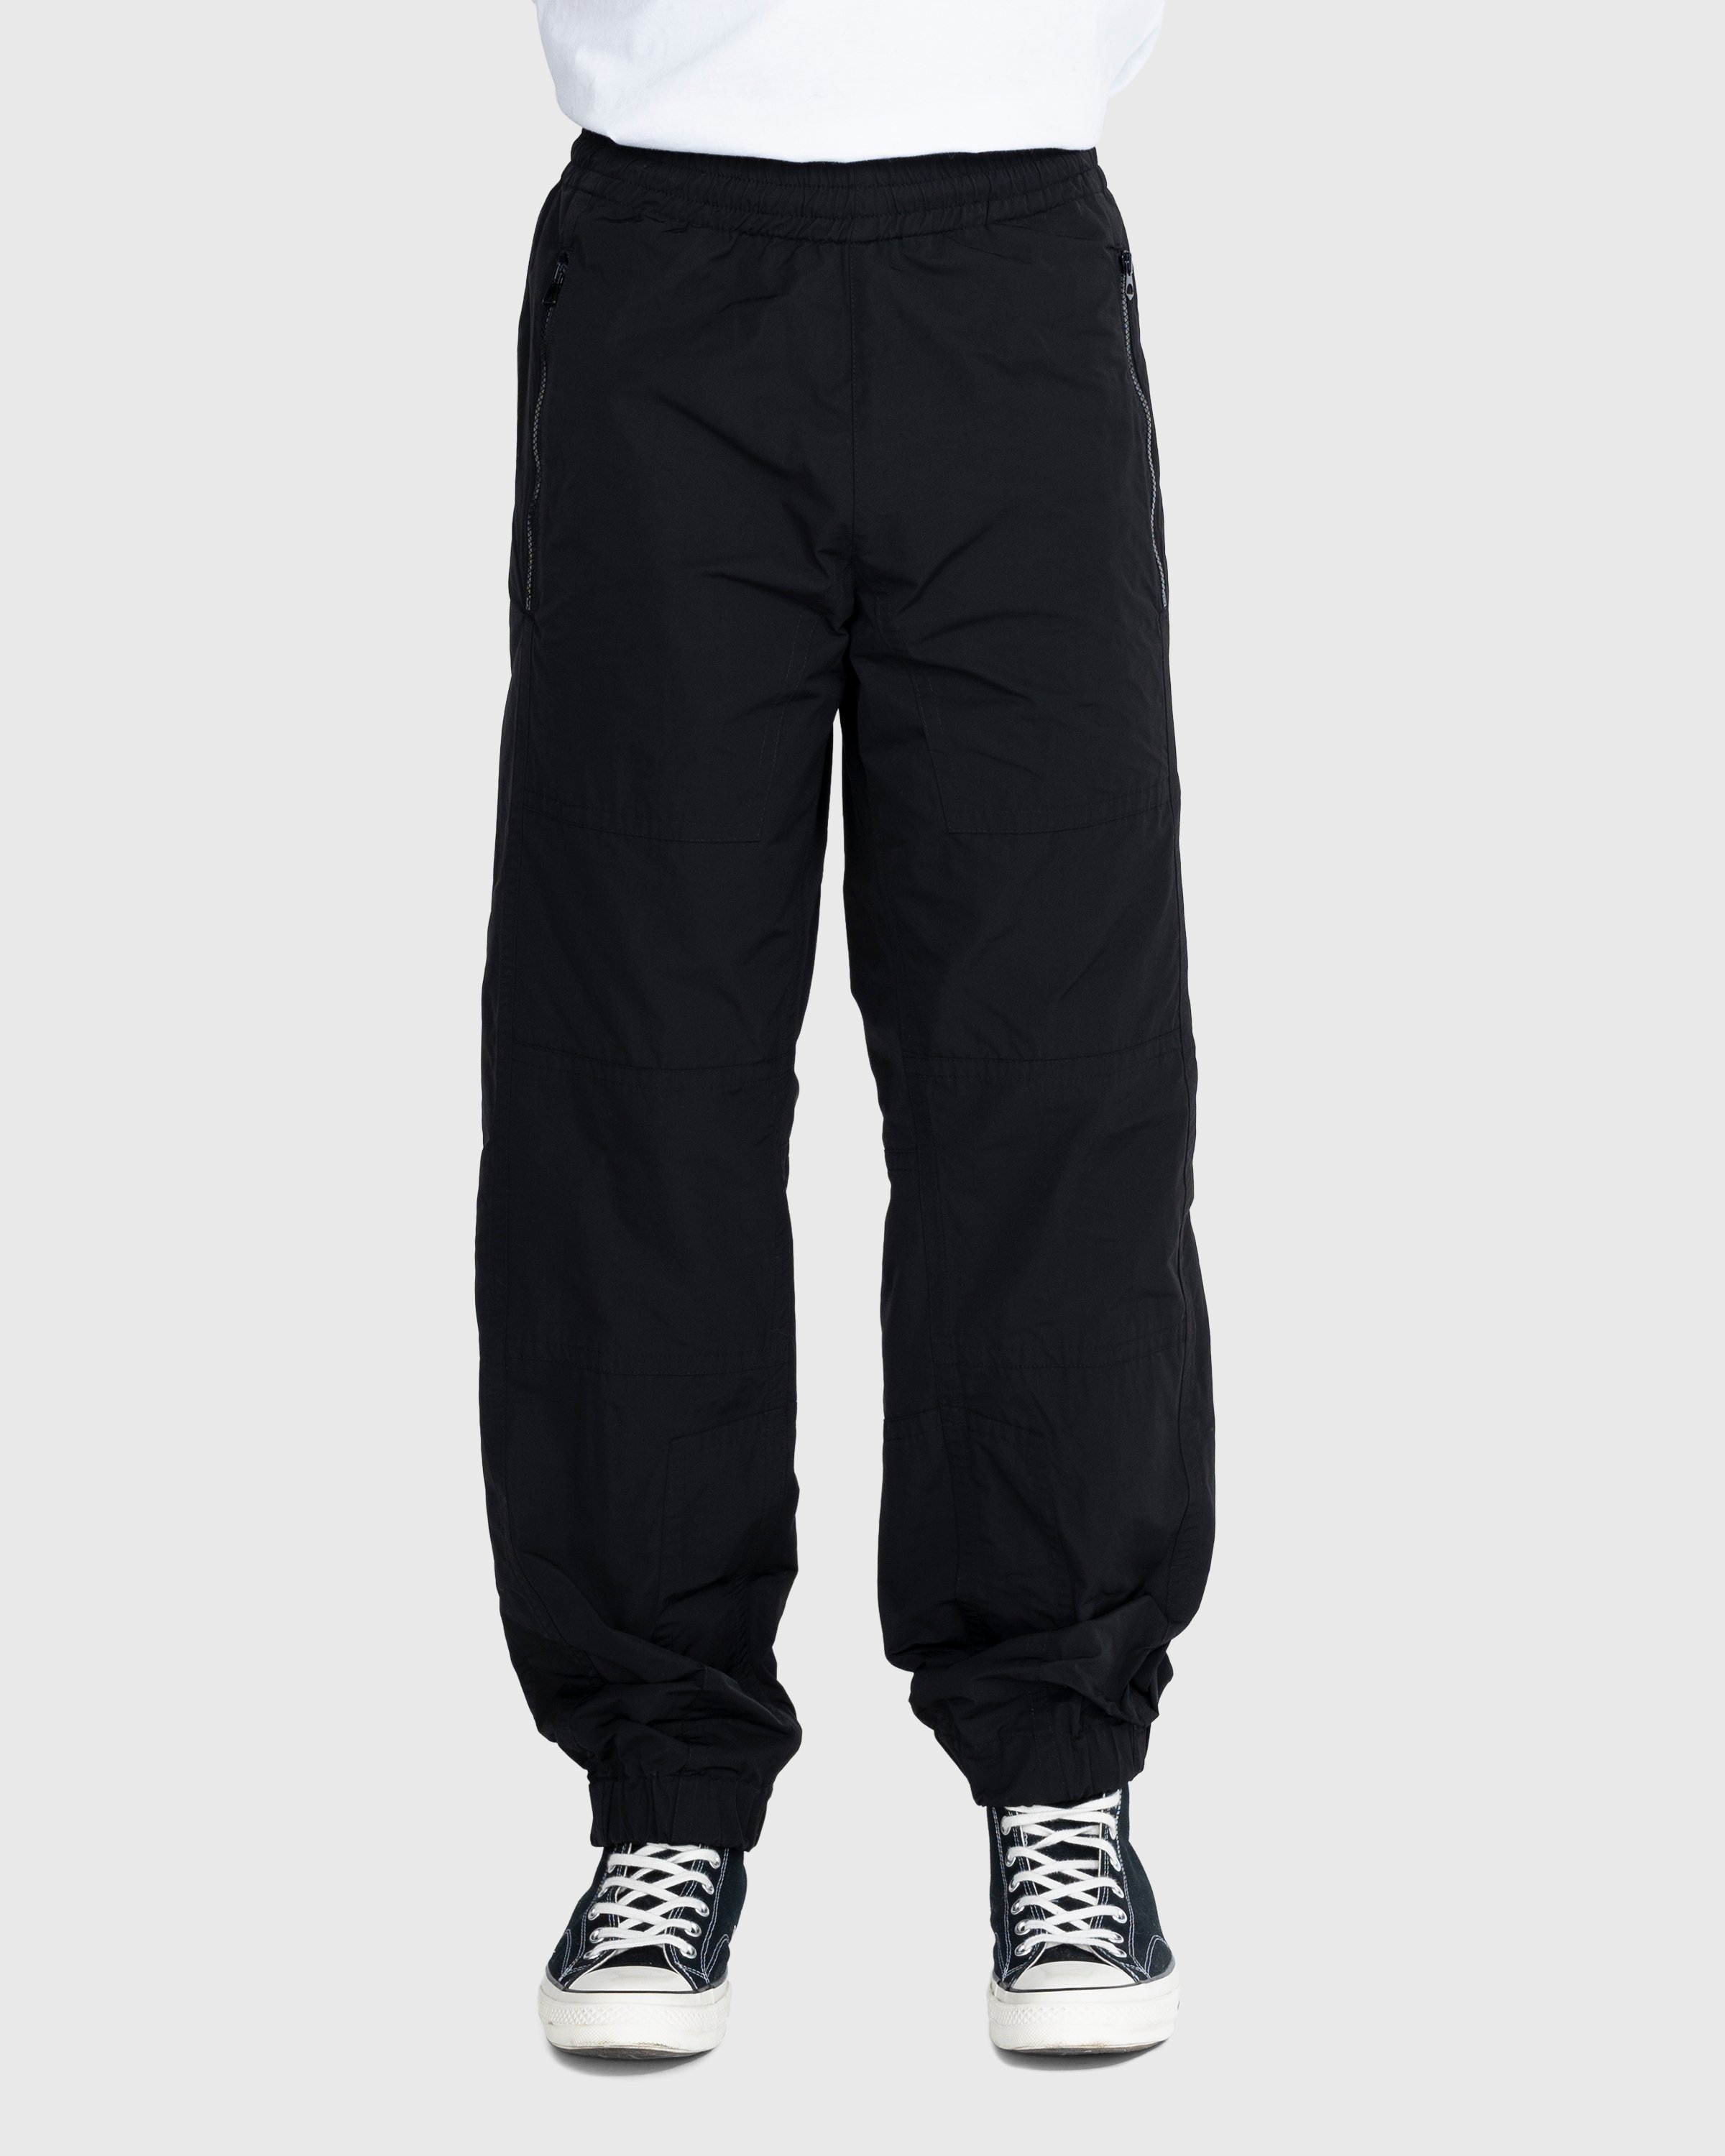 Dries van Noten - Peatt Pants - Clothing - Black - Image 2